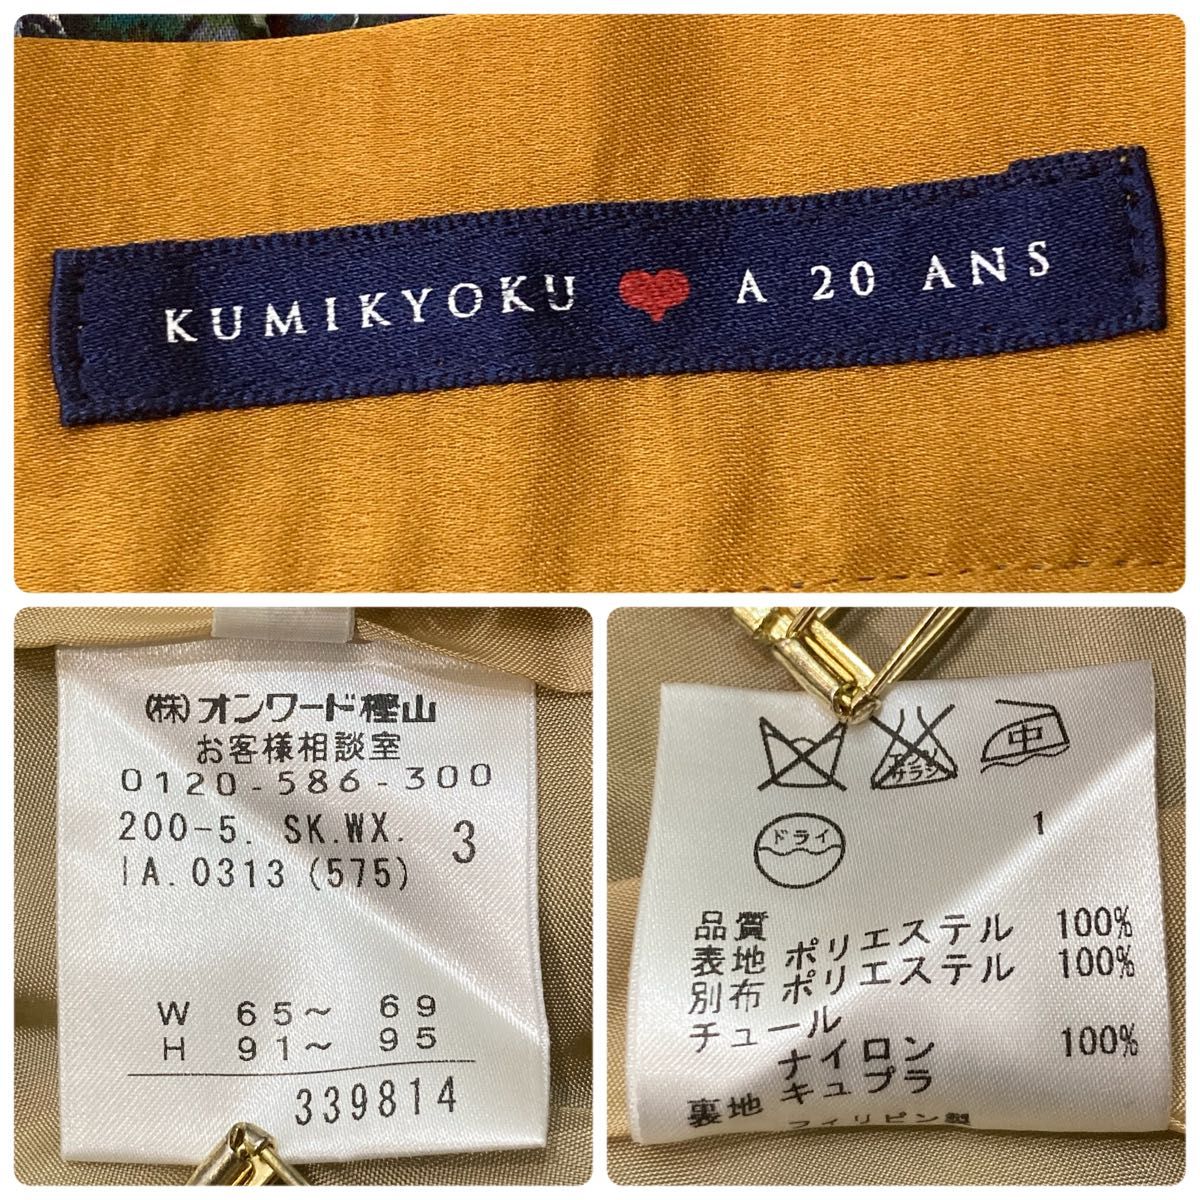 【クミキョク】 KUMIKYOKU A 20 ANS  フレアスカート  膝丈  小花柄  オンワード樫山  3